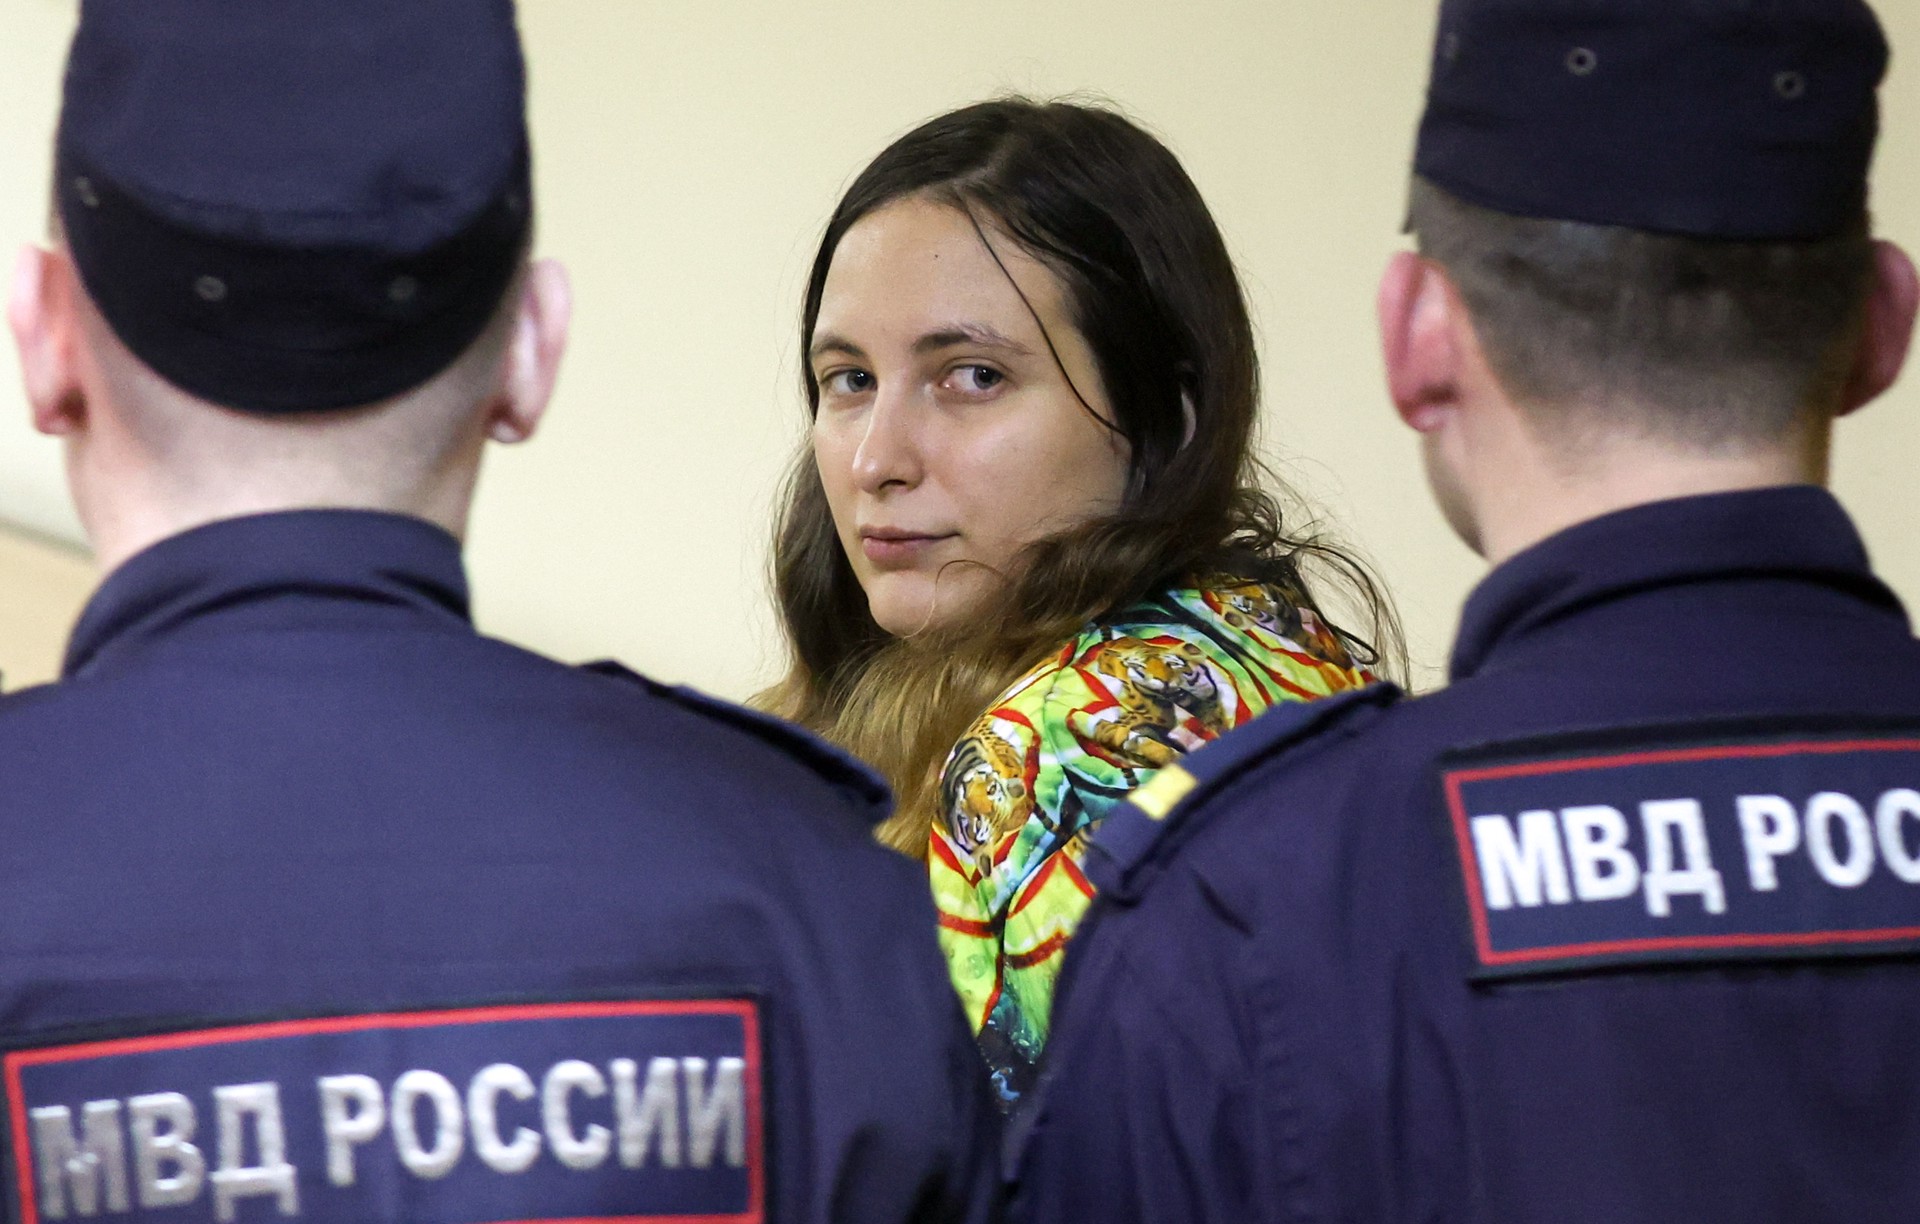 Суд в Петербурге приговорил художницу Скочиленко к семи годам колонии за распространение фейков о спецоперации